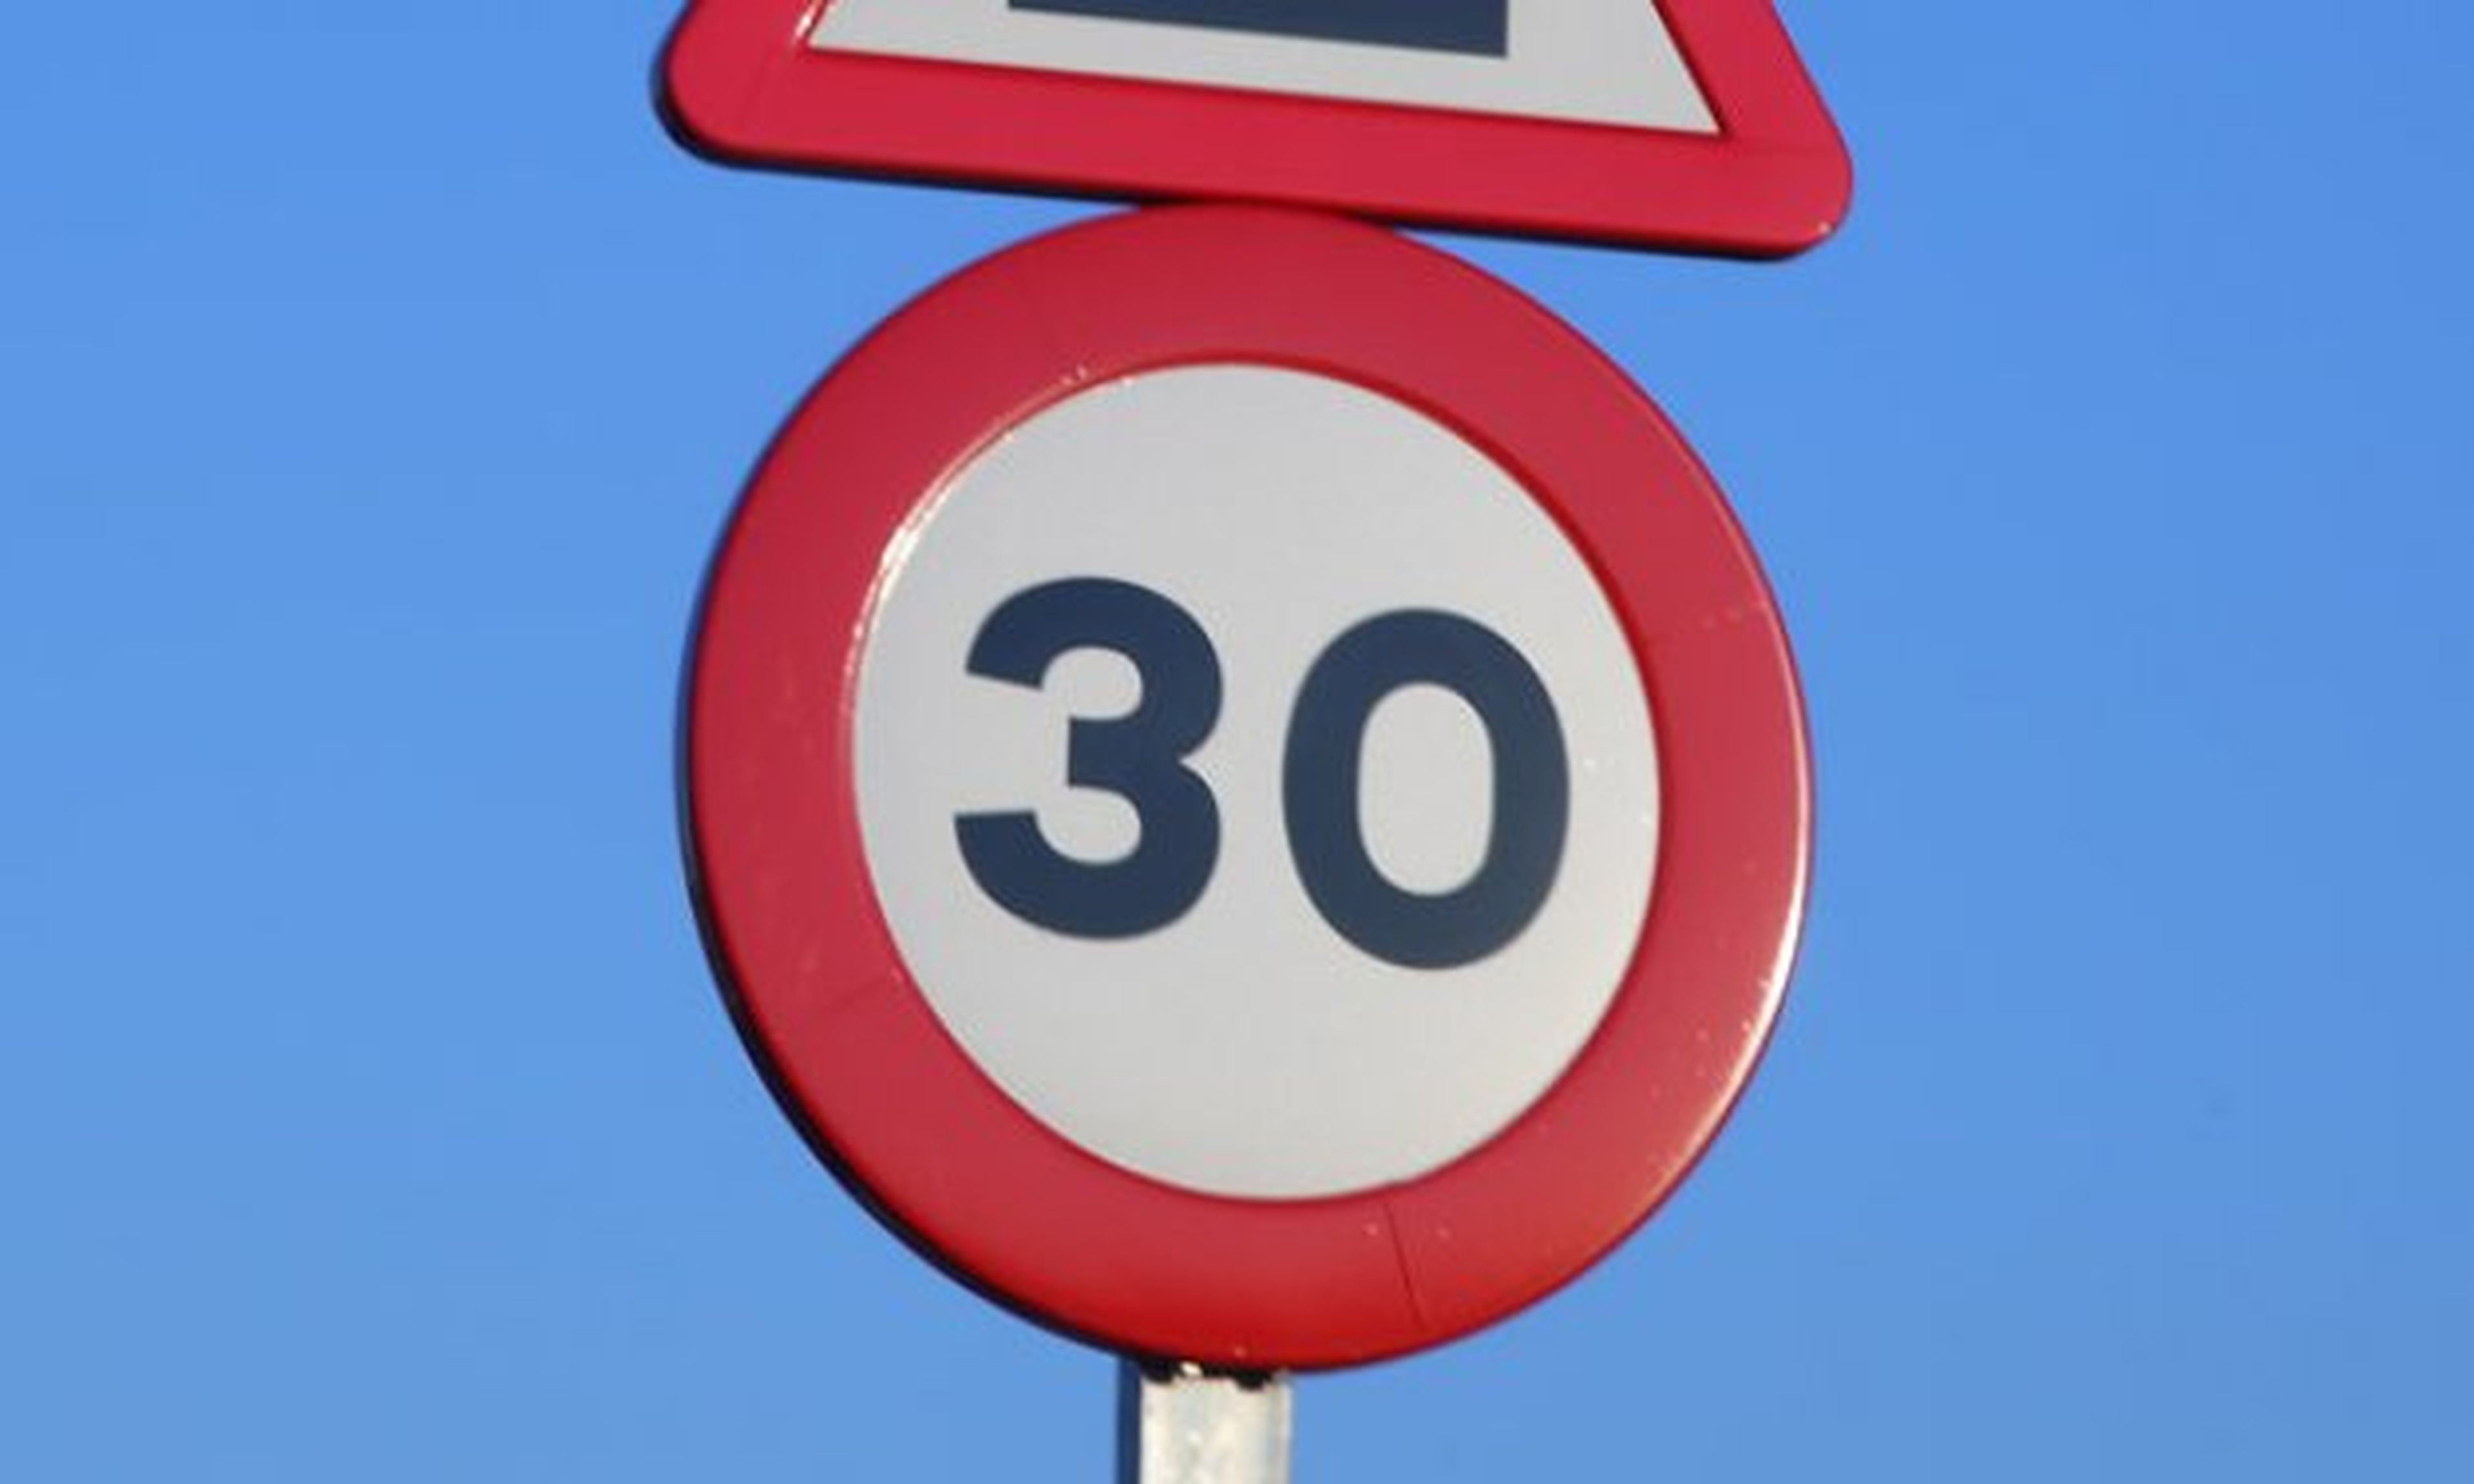 La Unión Europea planea reducir el límite urbano a 30 km/h